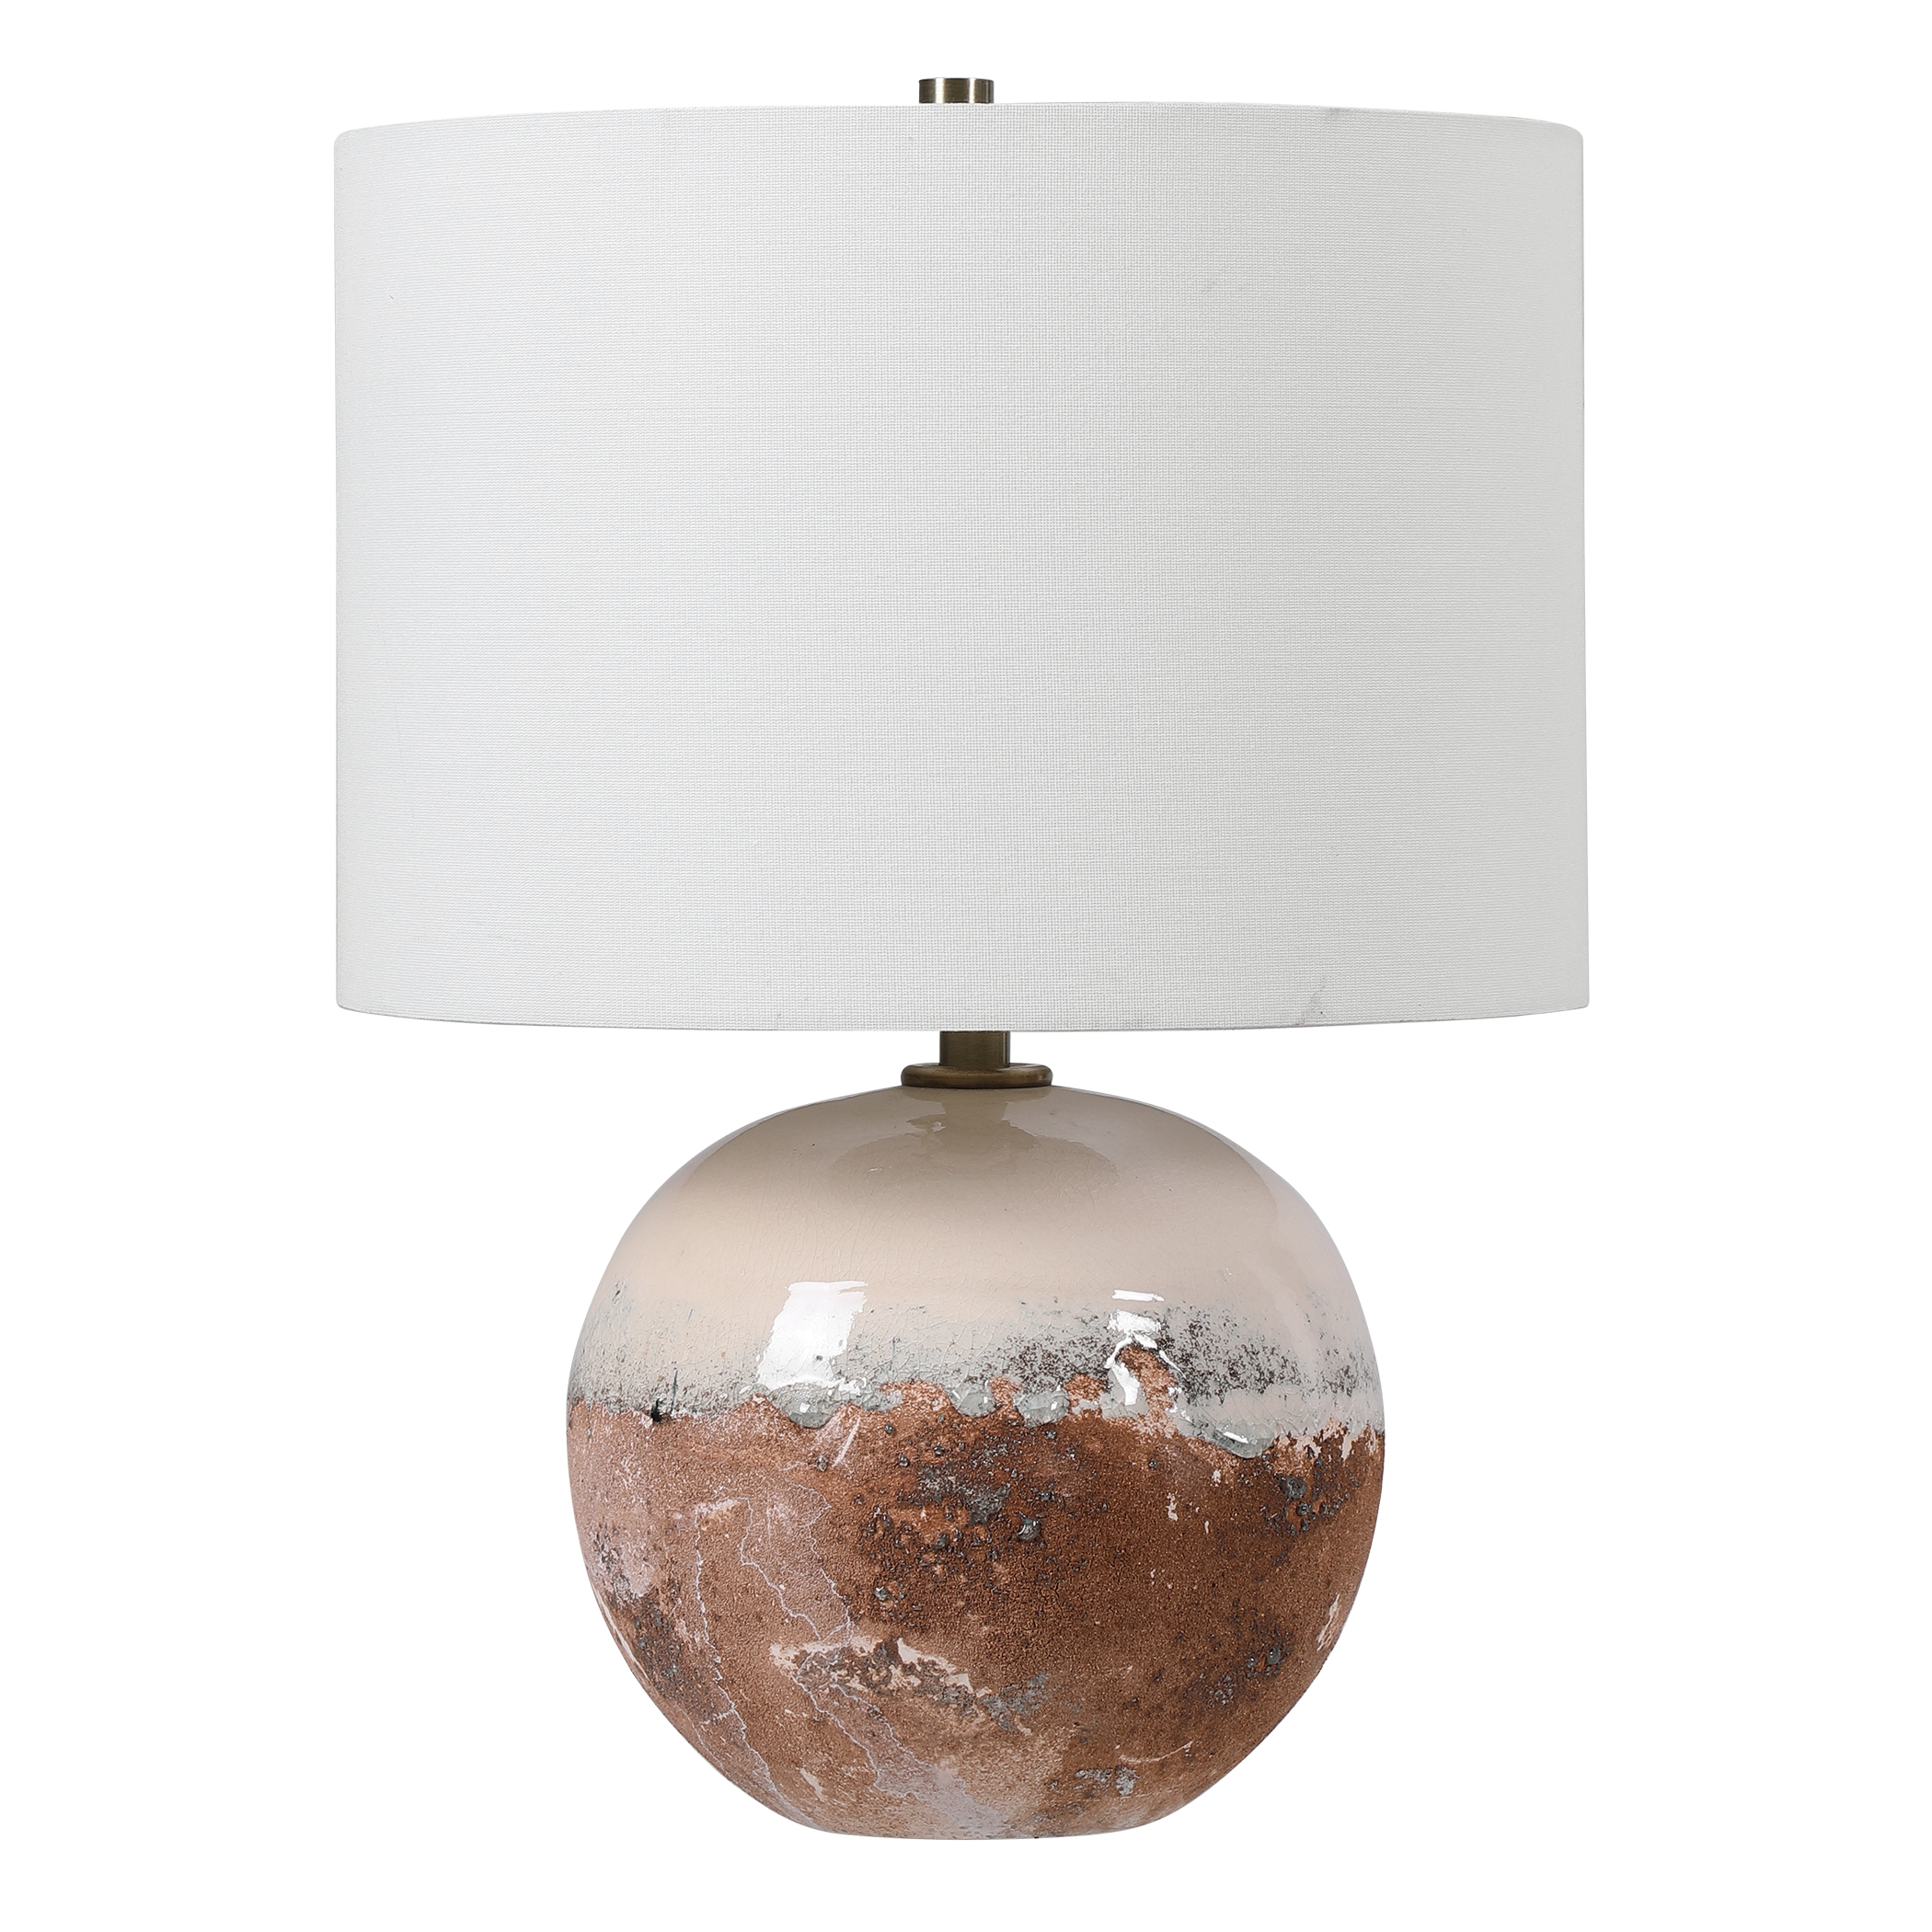 Durango Terracotta Accent Lamp - Image 2